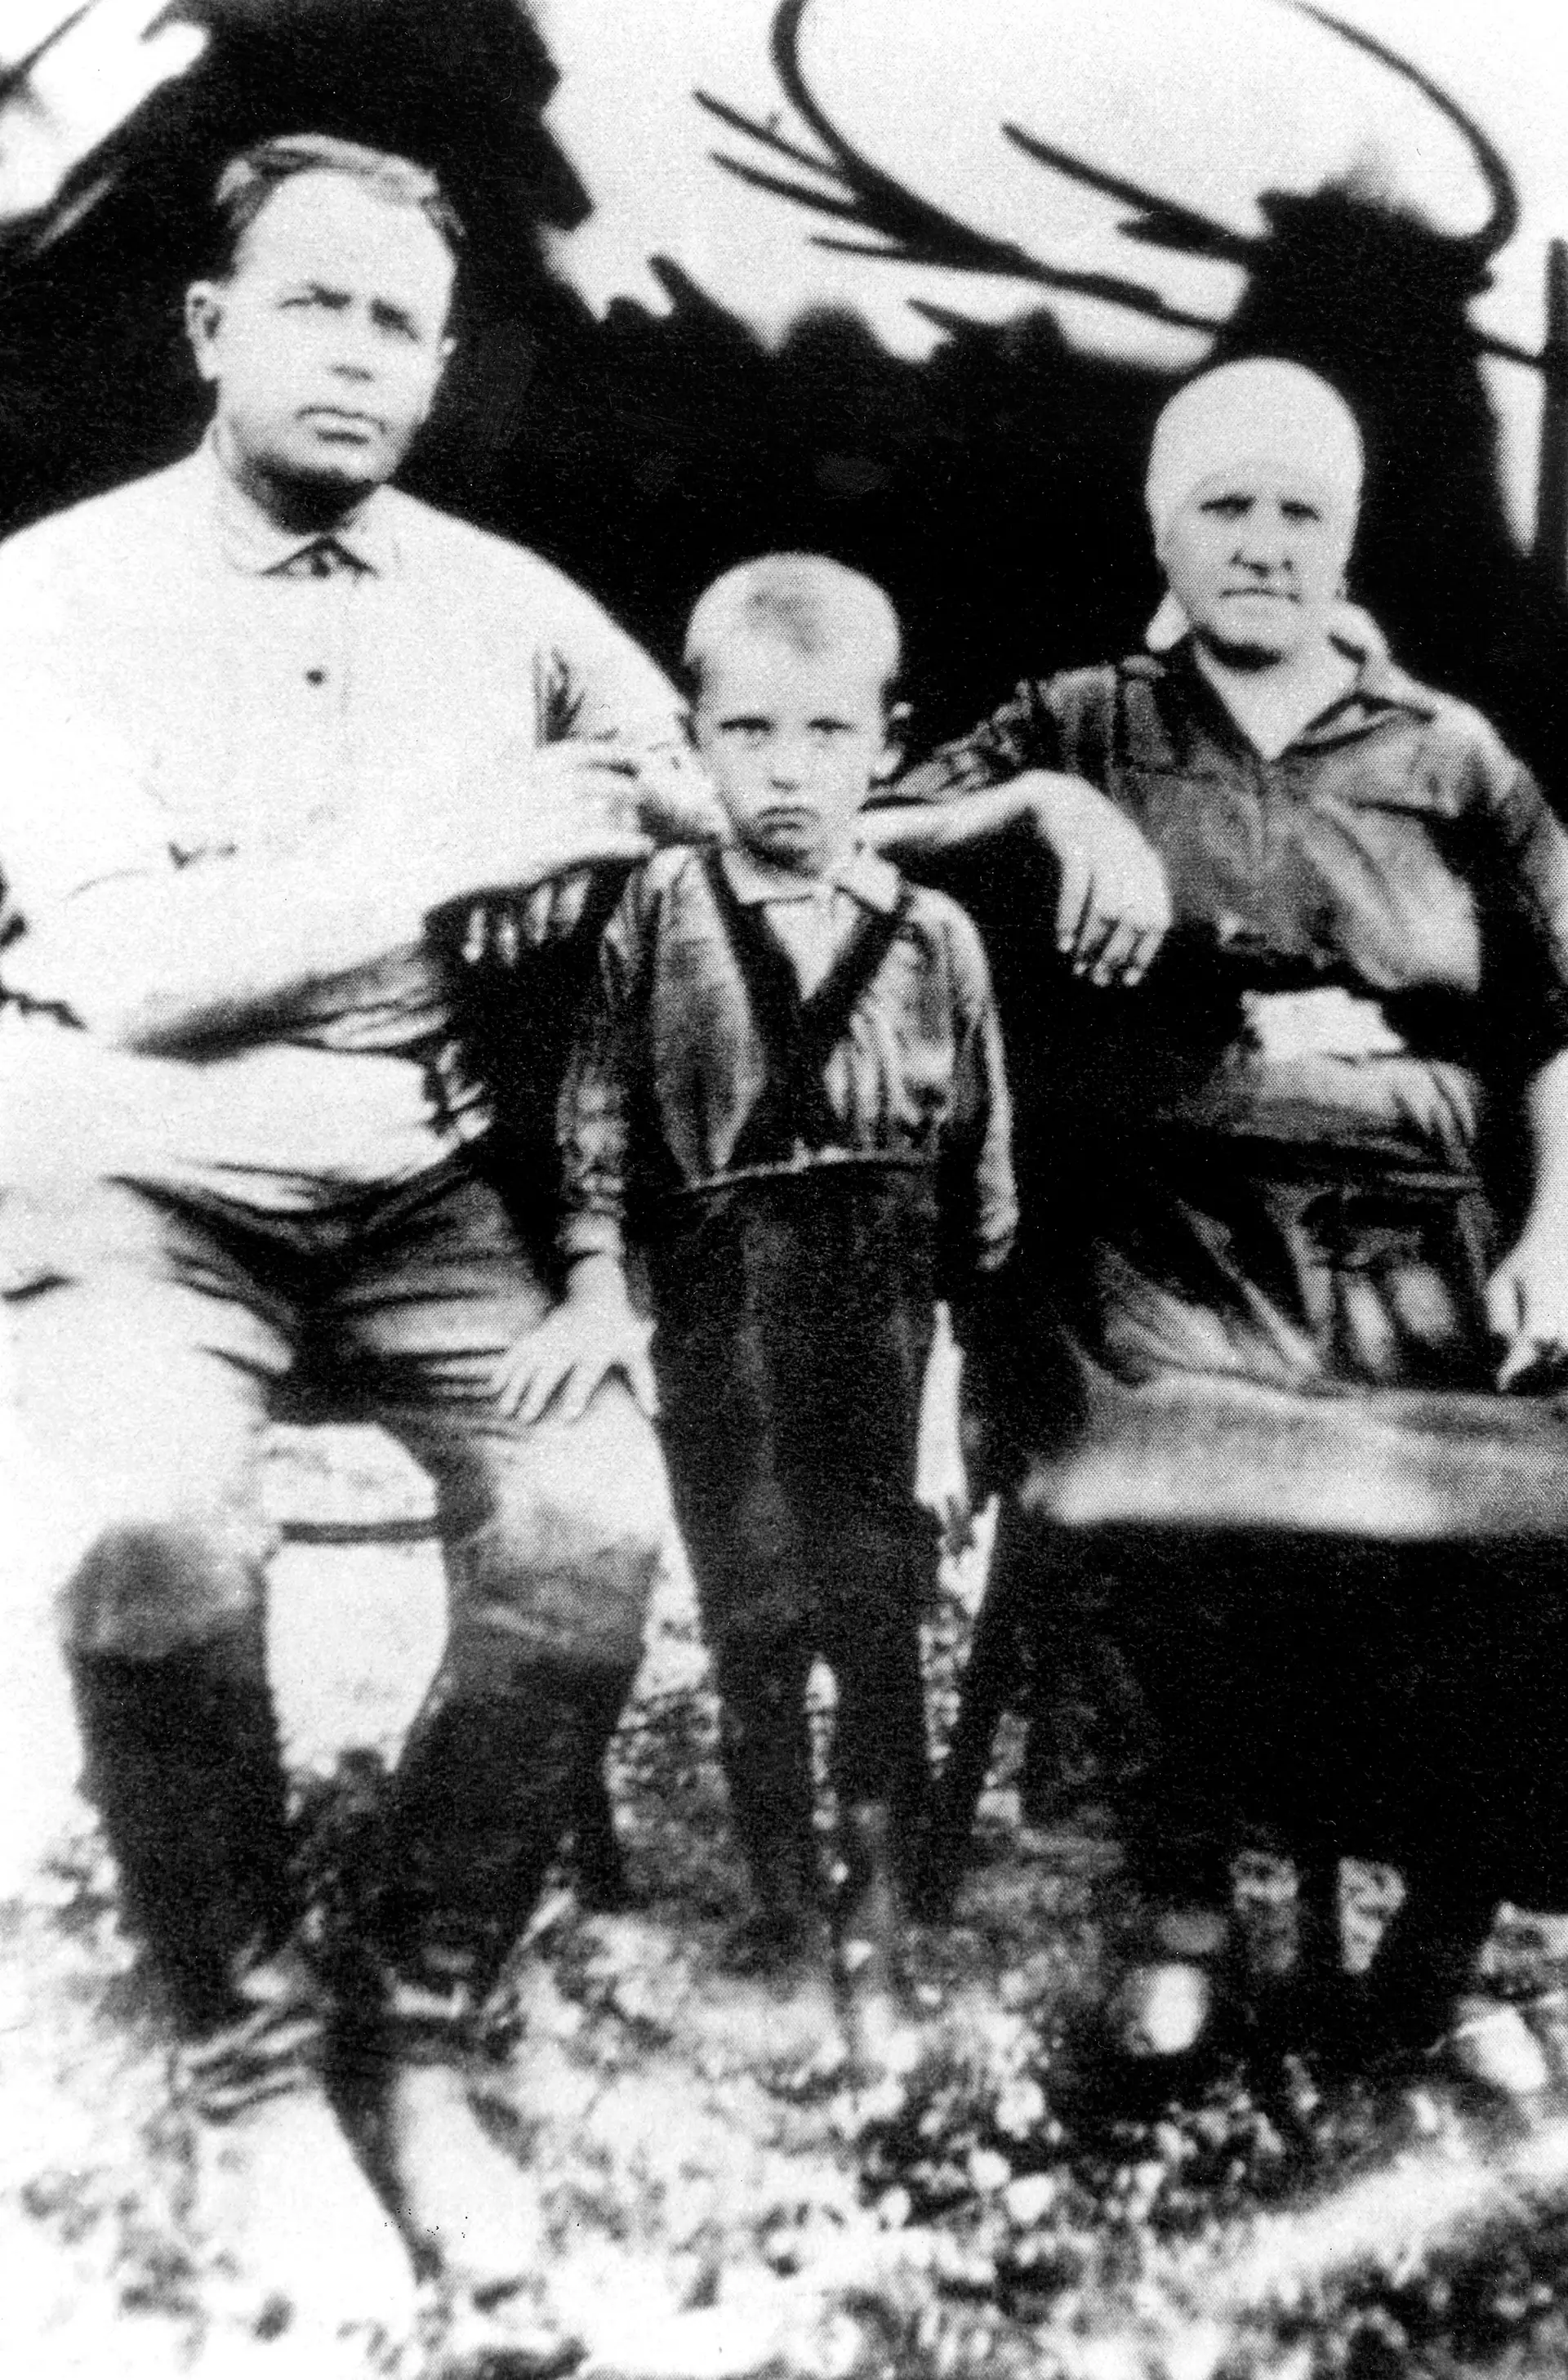 INFÂNCIA. Em tenra idade, numa imagem que se pensa ser de 1937, tinha ele 6 anos, na companhia dos avós maternos, Panteley (à esq.) e Vasilisa Gopkaloe, nascidos em território ucraniano